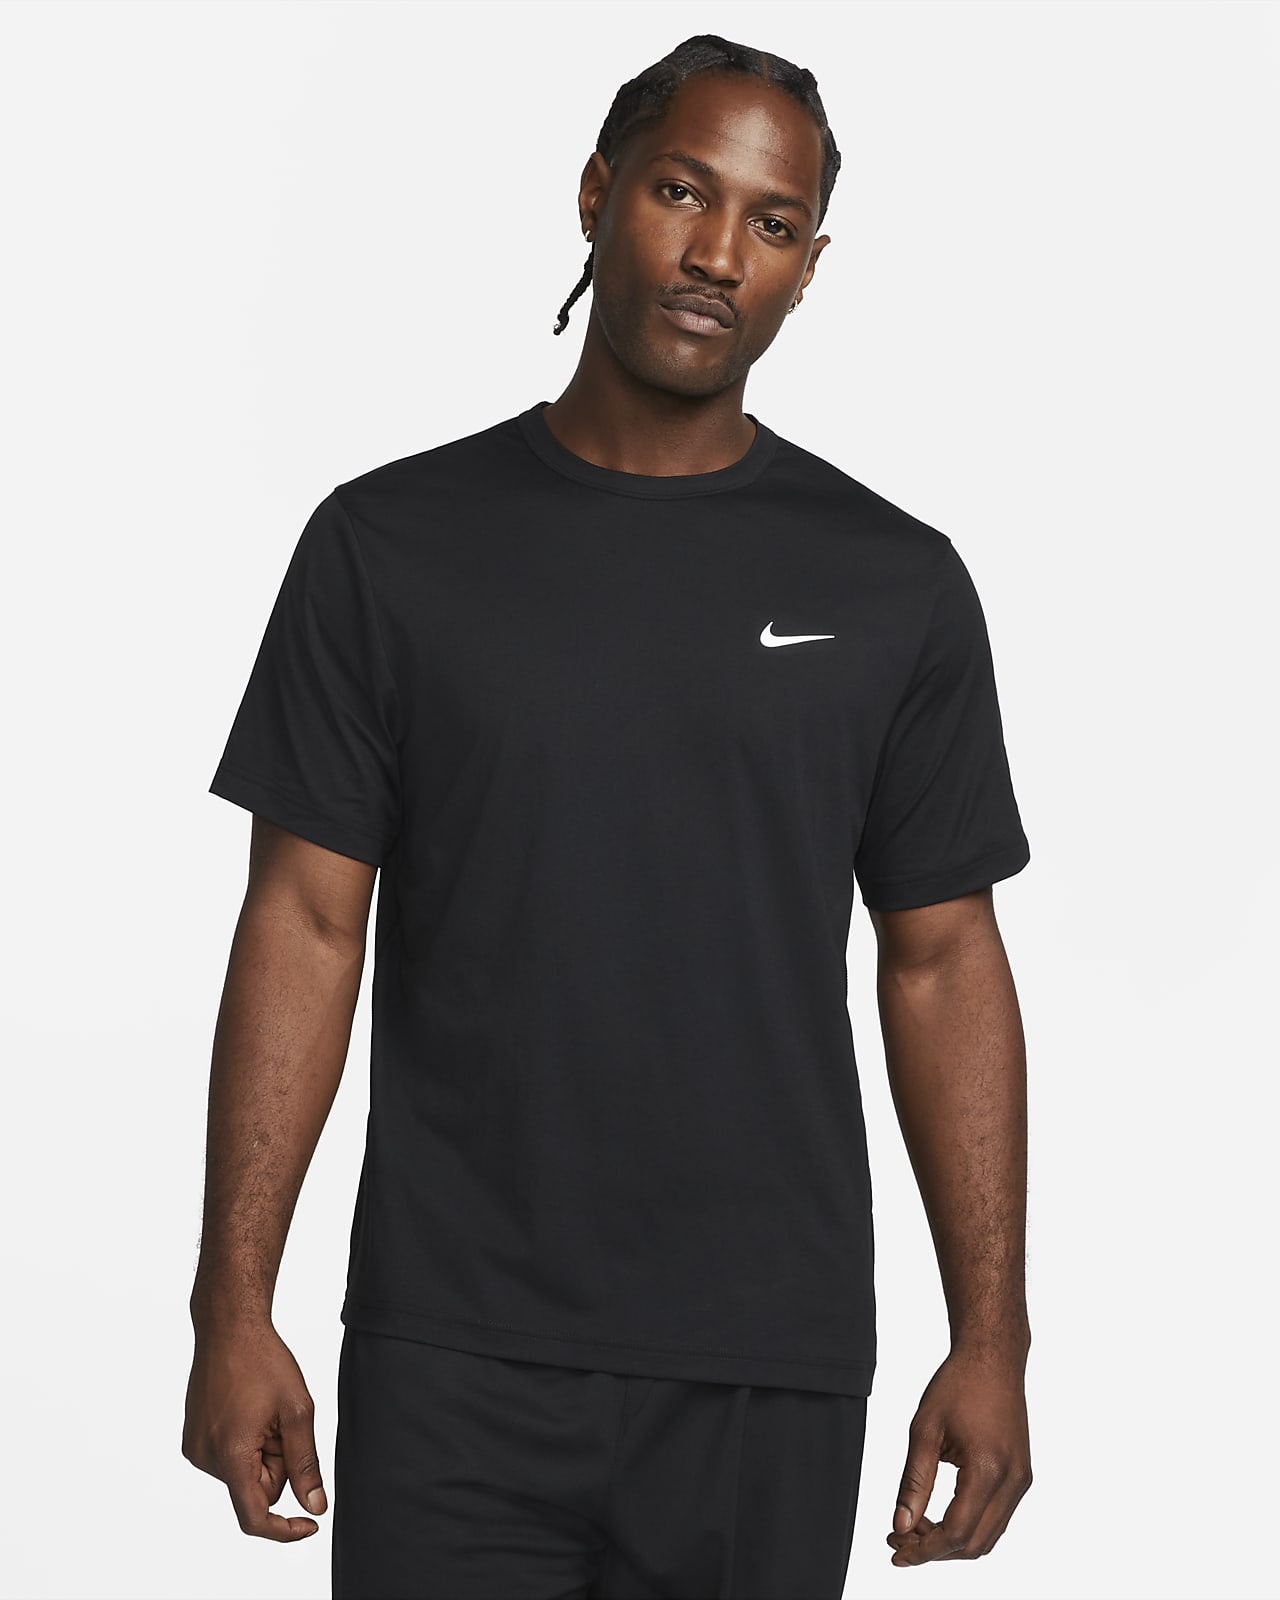 Ανδρική ευέλικτη κοντομάνικη μπλούζα Dri-FIT UV Nike Hyverse